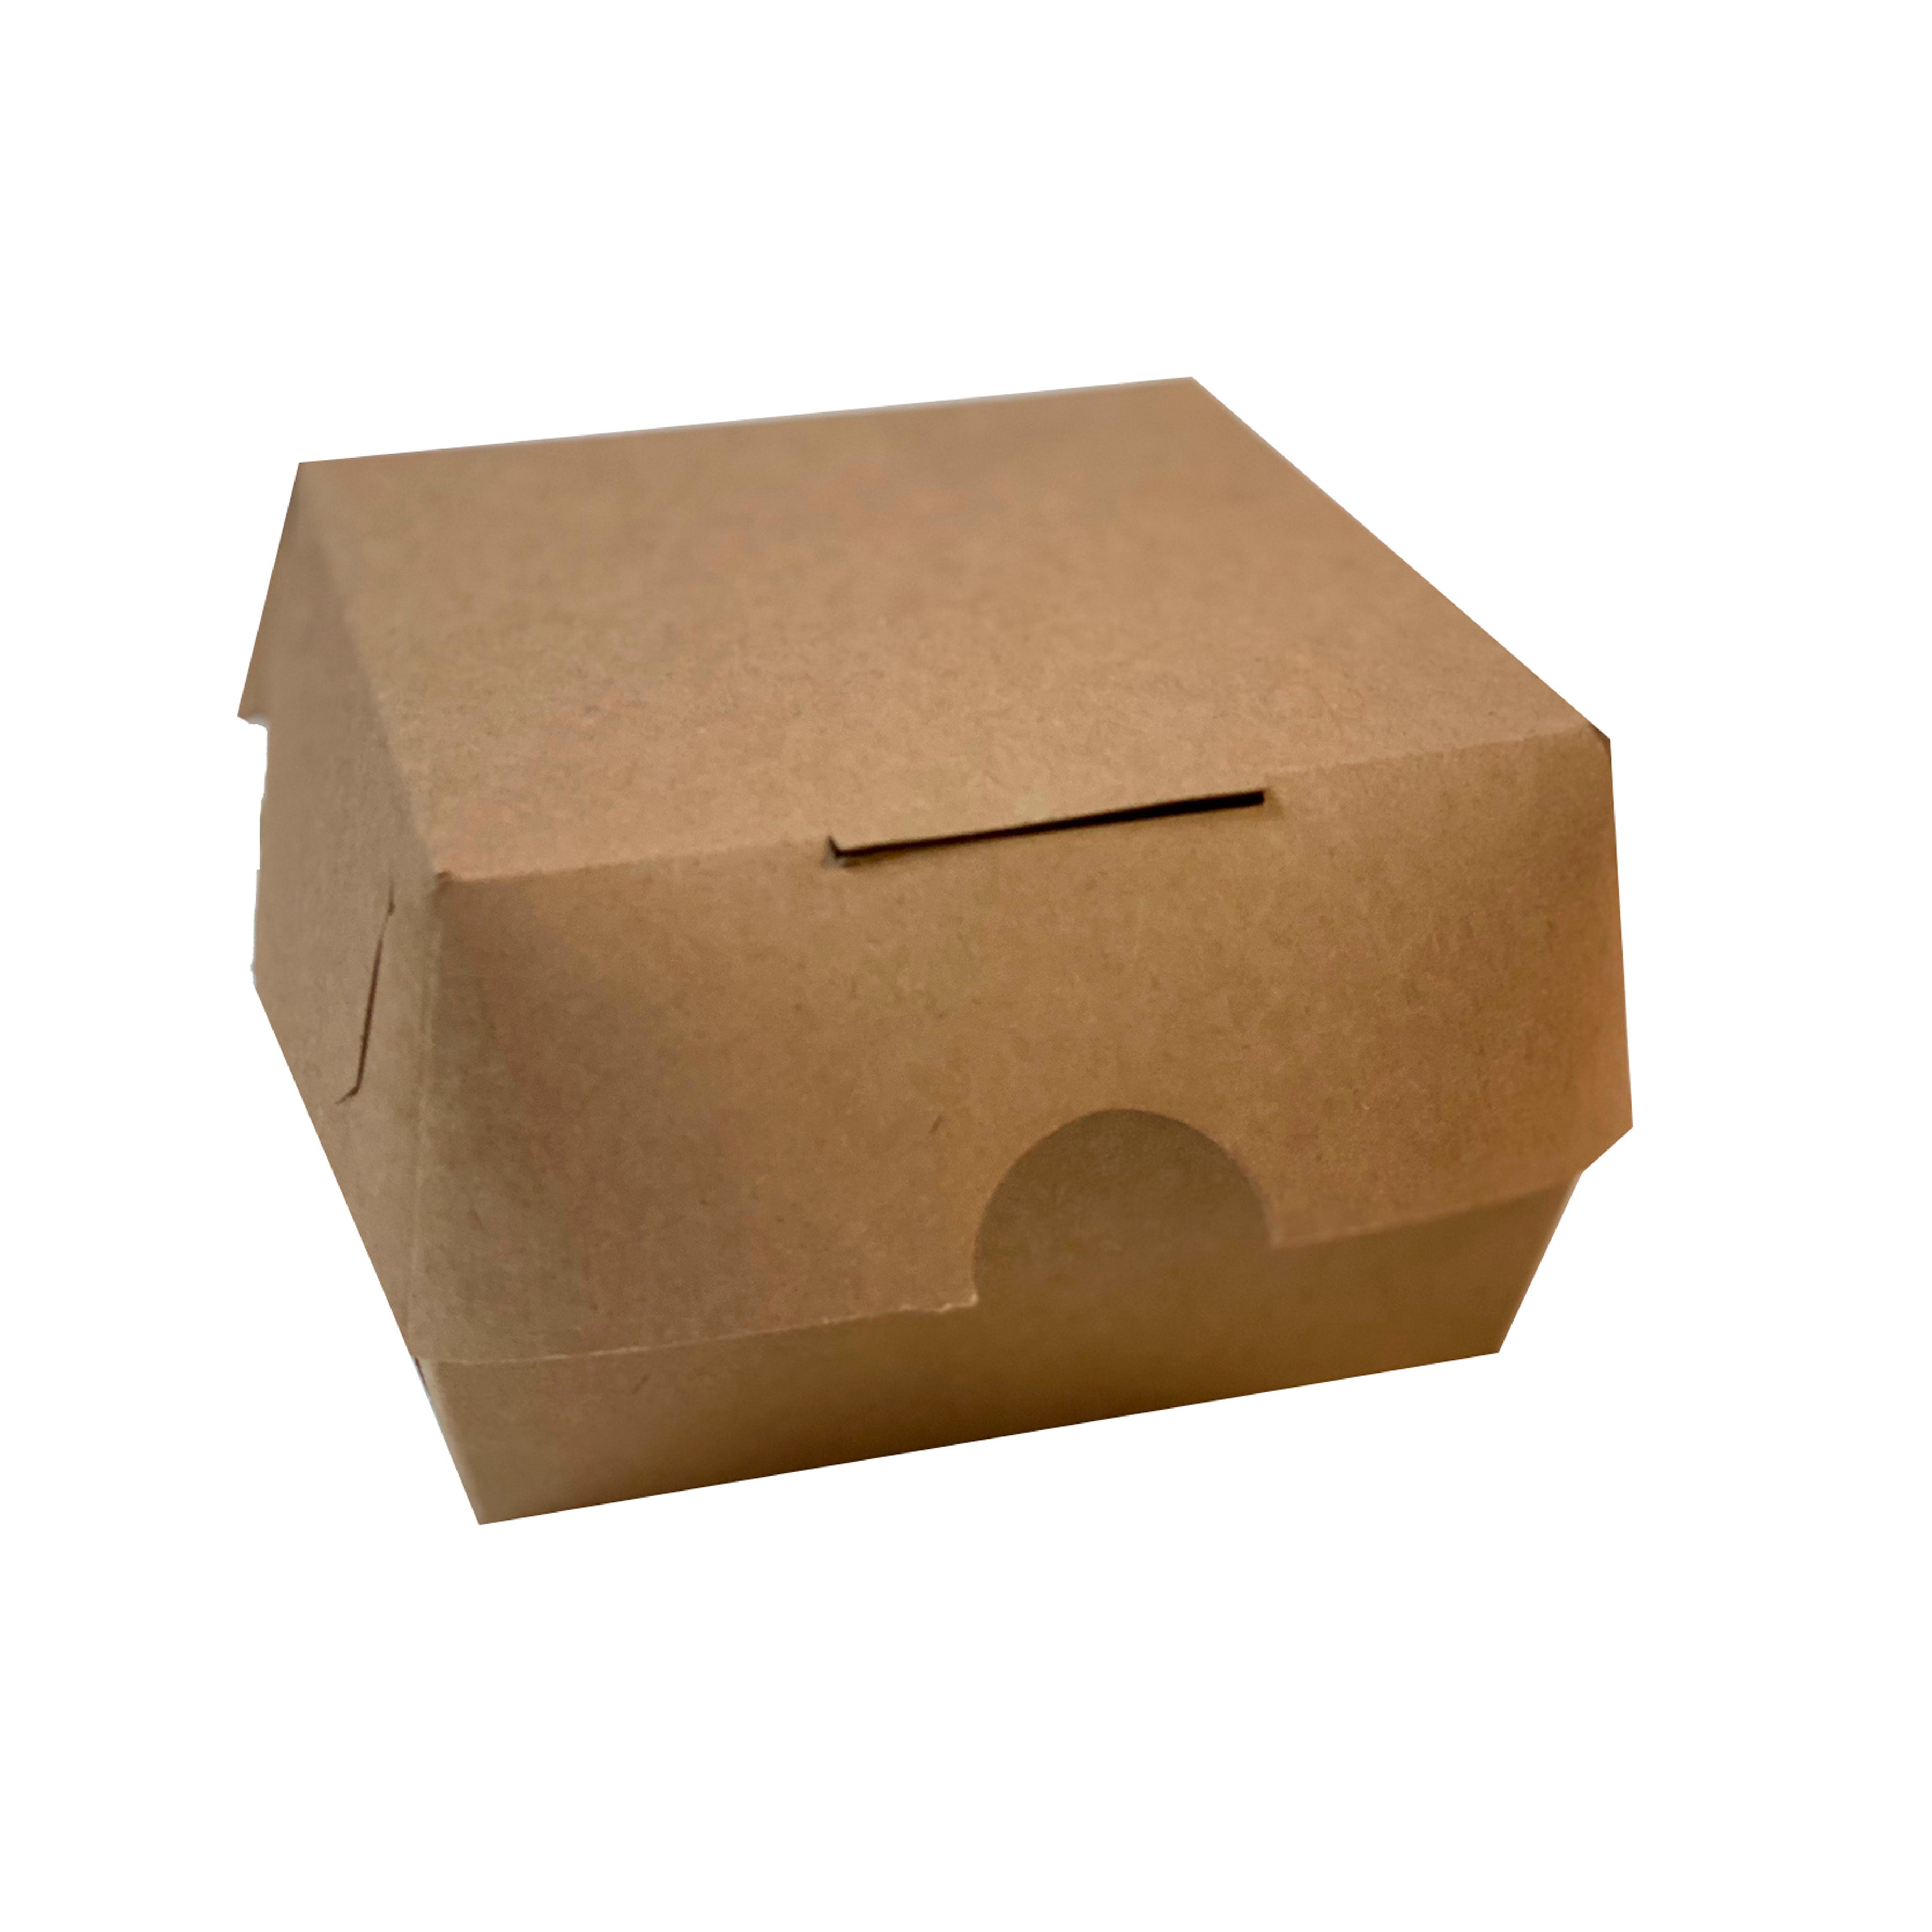 hamburguesero, caja para hamburguesa, caja de carton para hamburguesa, caja burger, empaques nuevos para hamburguesas, cajas para comida, hamburguesero de papel, empaque sustentable, cajas de cartón, caja de almeja, caja tipo concha, caja de alimentos para llevar, desechable para comida, Fabricación de empaque, Cajas de carton para comida, Empaque para llevar comida, Producción de Empaque Grado Alimenticio